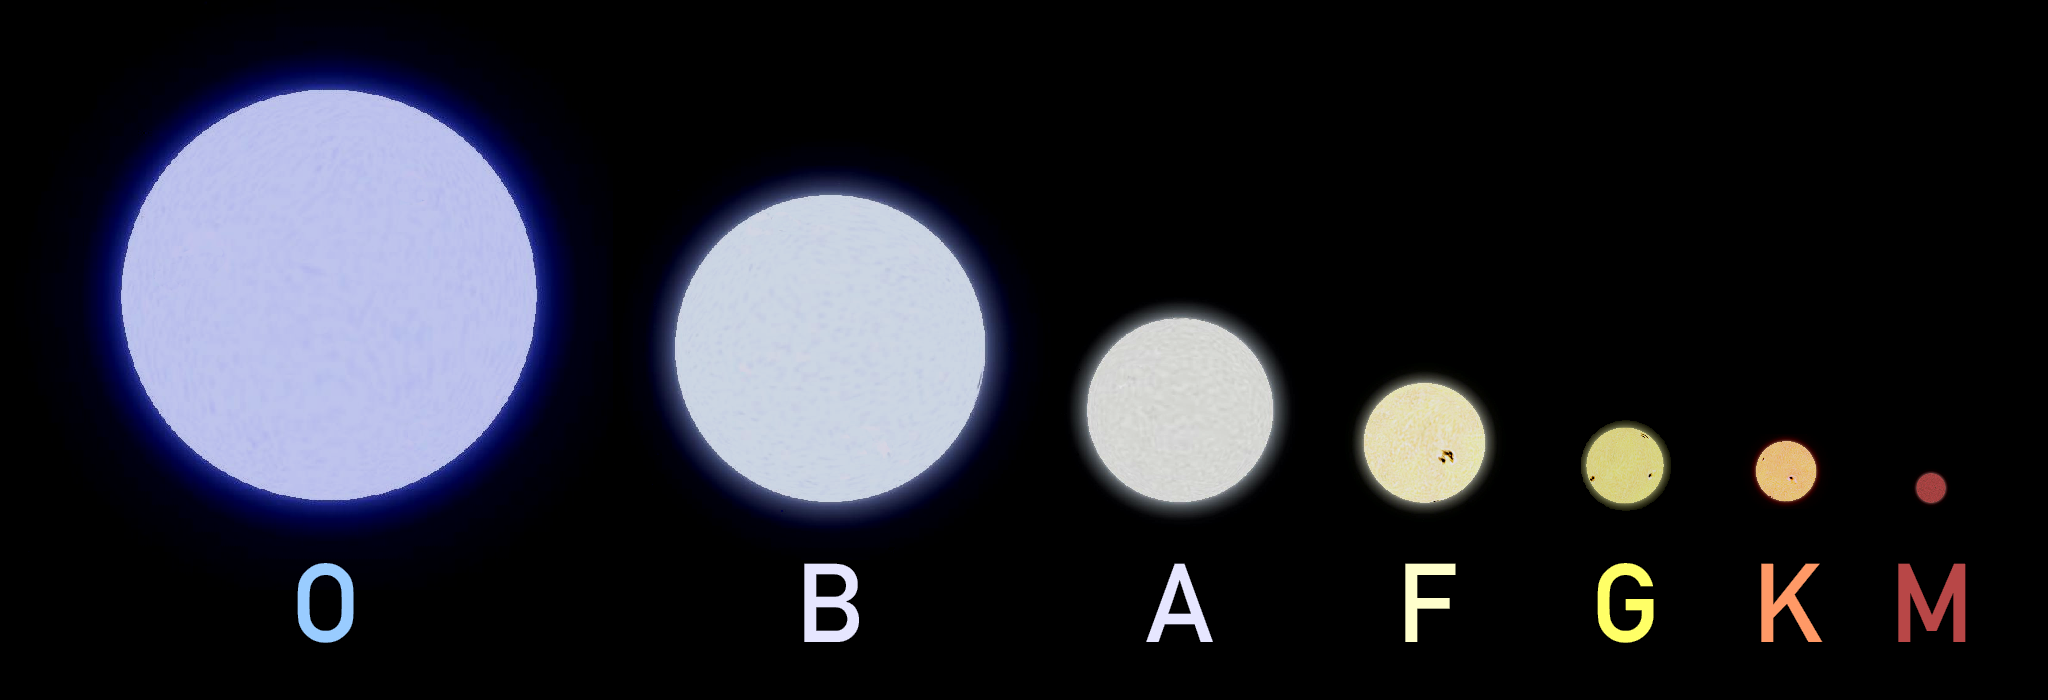 Сколько классов звезд. Гарвардская спектральная классификация звезд. Спектральная классификация Моргана-Кинана. Спектральная классификация звезд g2v. Звезды спектрального класса g2v.